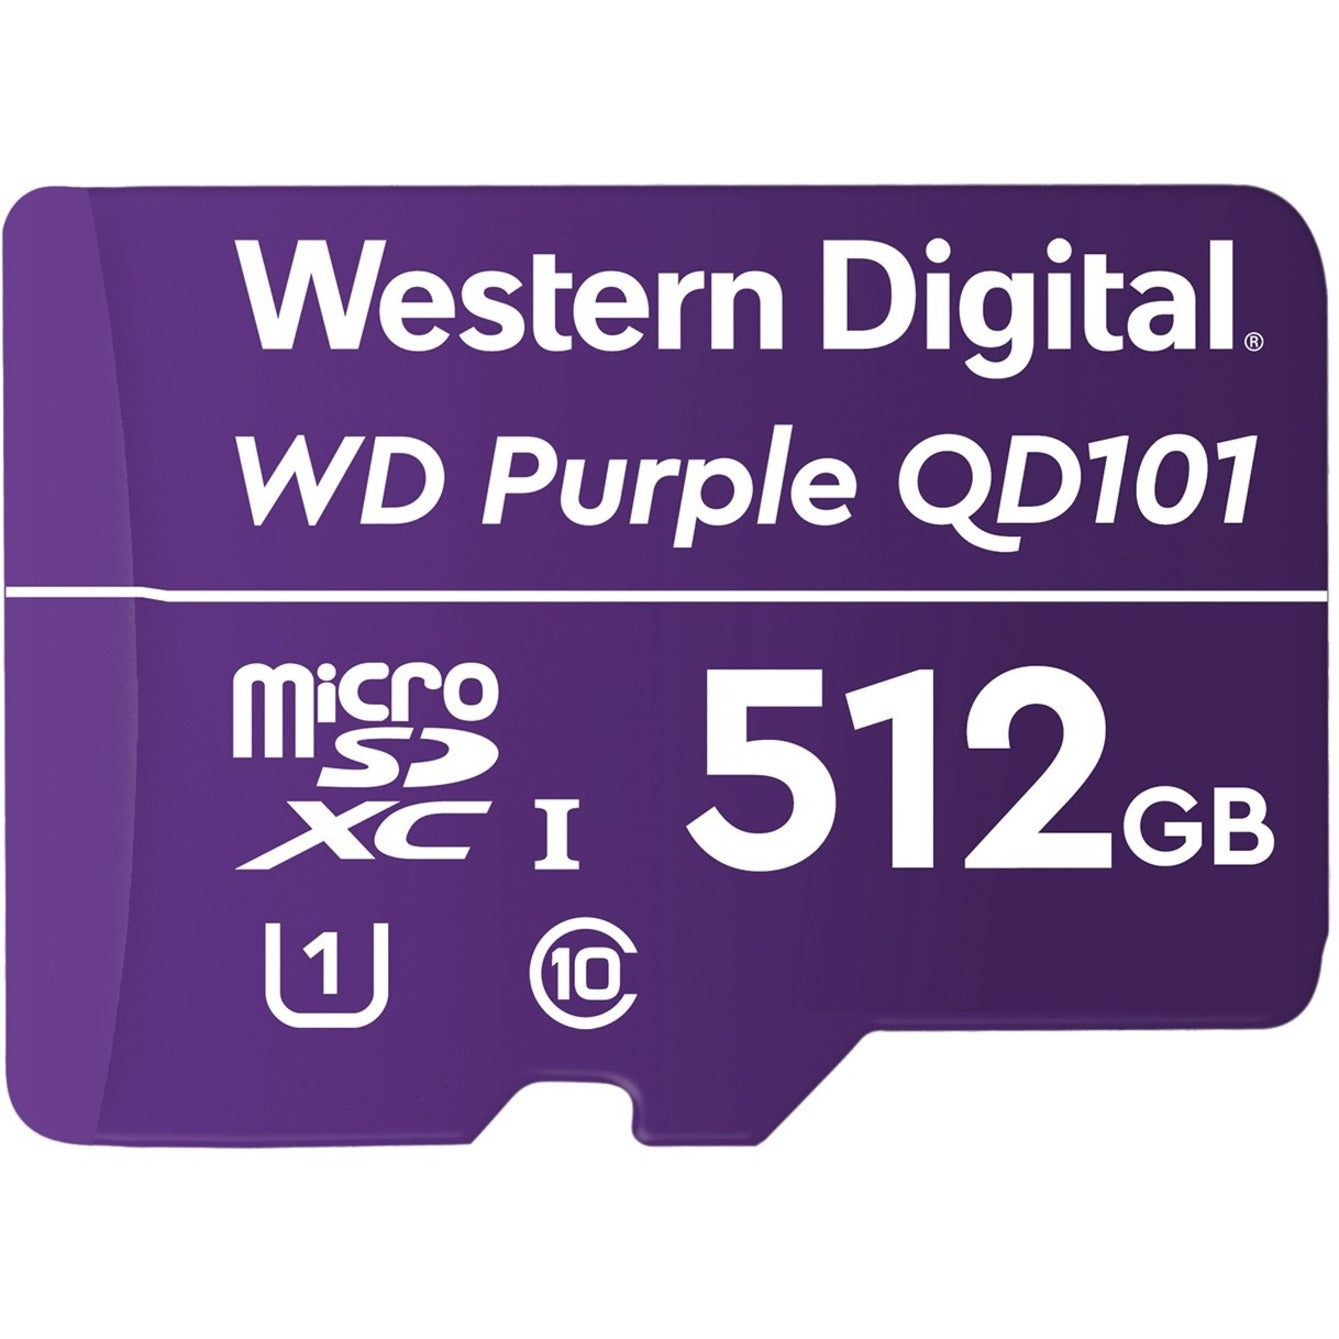 Western Digital WDD512G1P0C Purple™ SC QD101 512GB microSDXC, 3 Year Limited Warranty